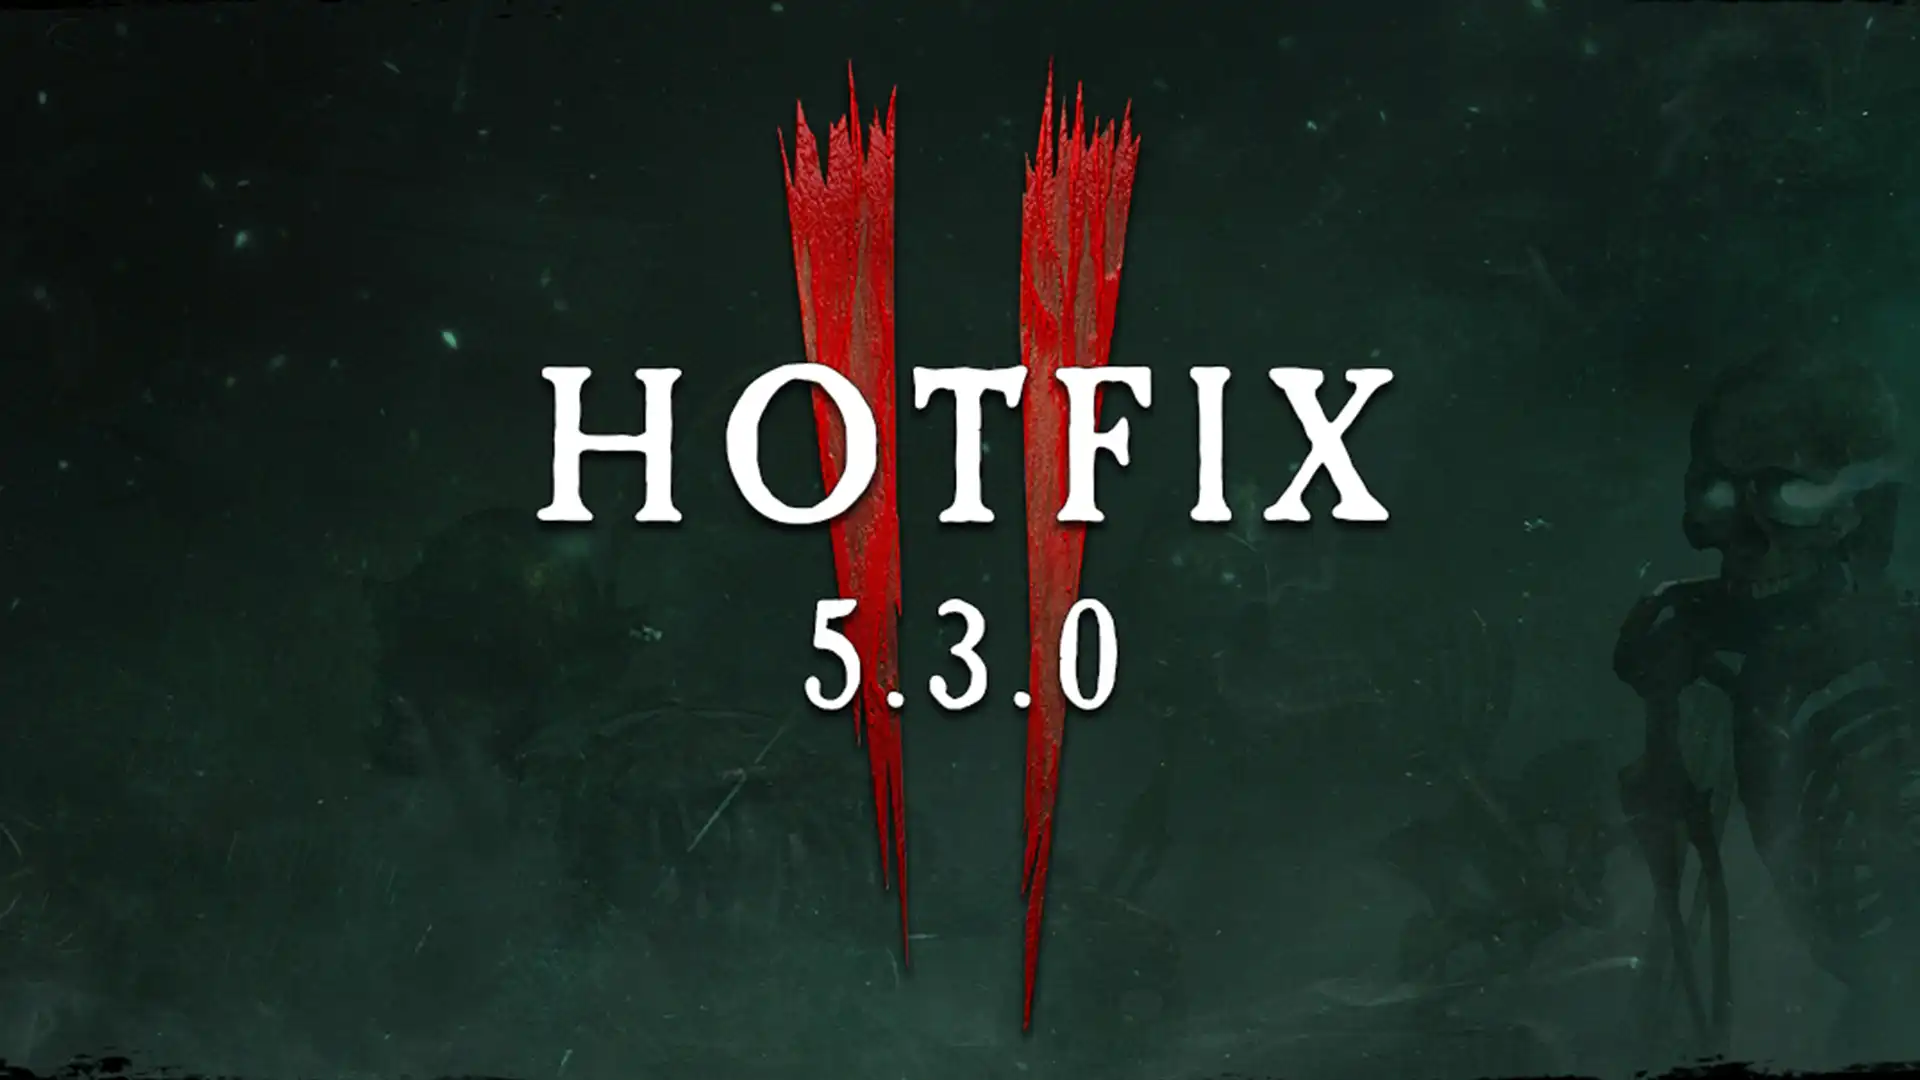 Обложка обновления Hotfix 5.3.0 для Warhammer: Vermintide 2